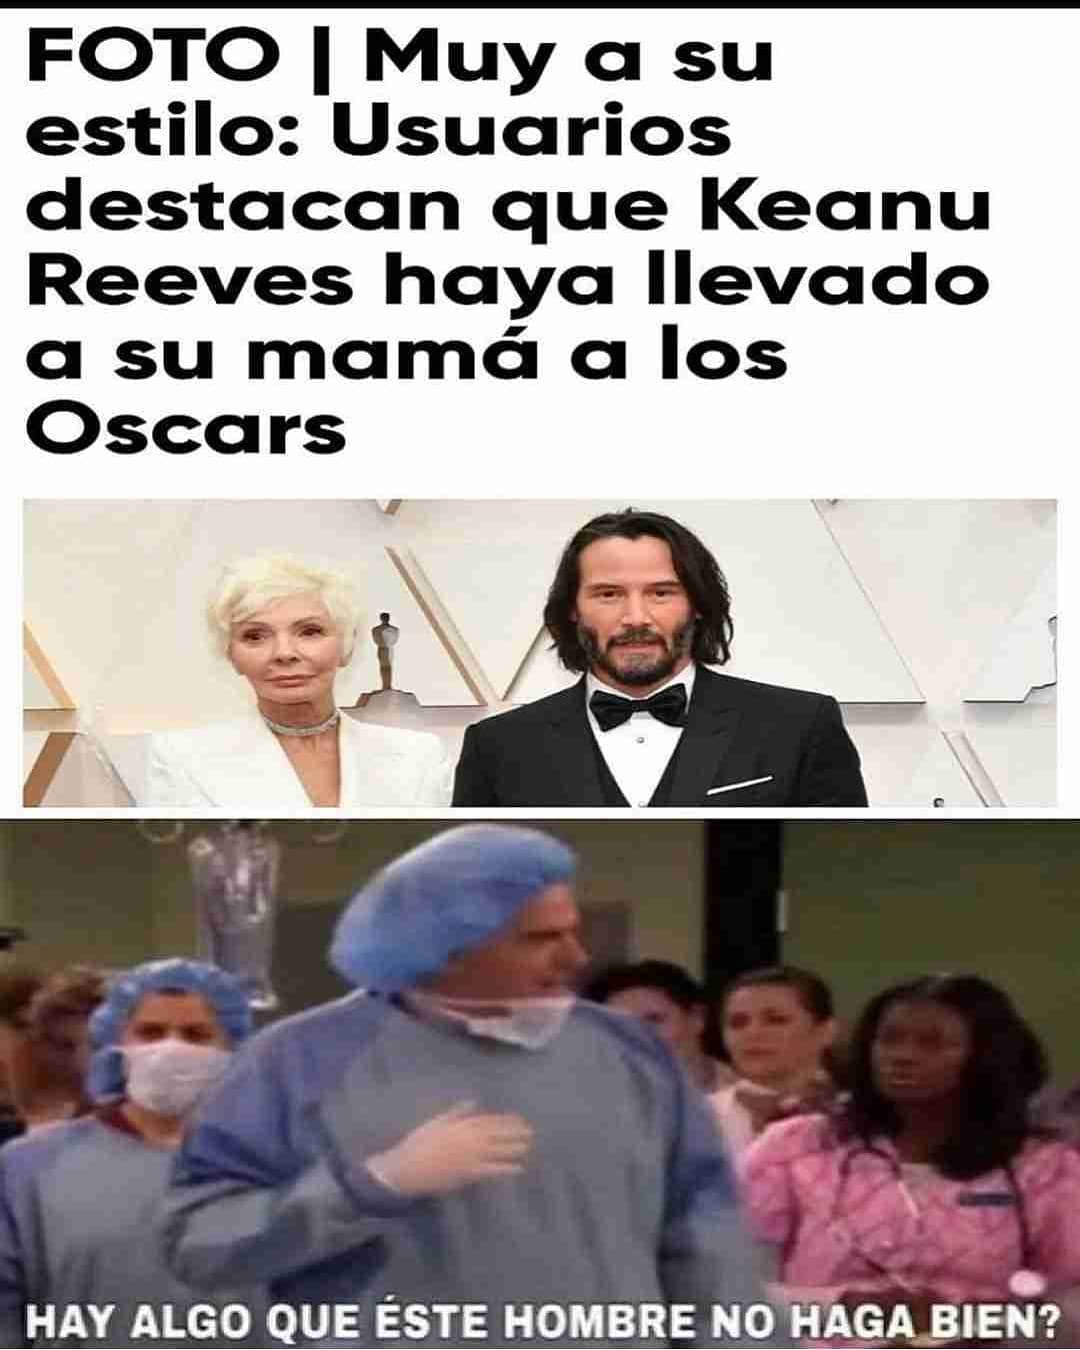 Foto I Muy a su estilo: Usuarios destacan que Keanu Reeves haya llevado a su mamá a los Oscars. Hay algo que éste hombre no haga bien?